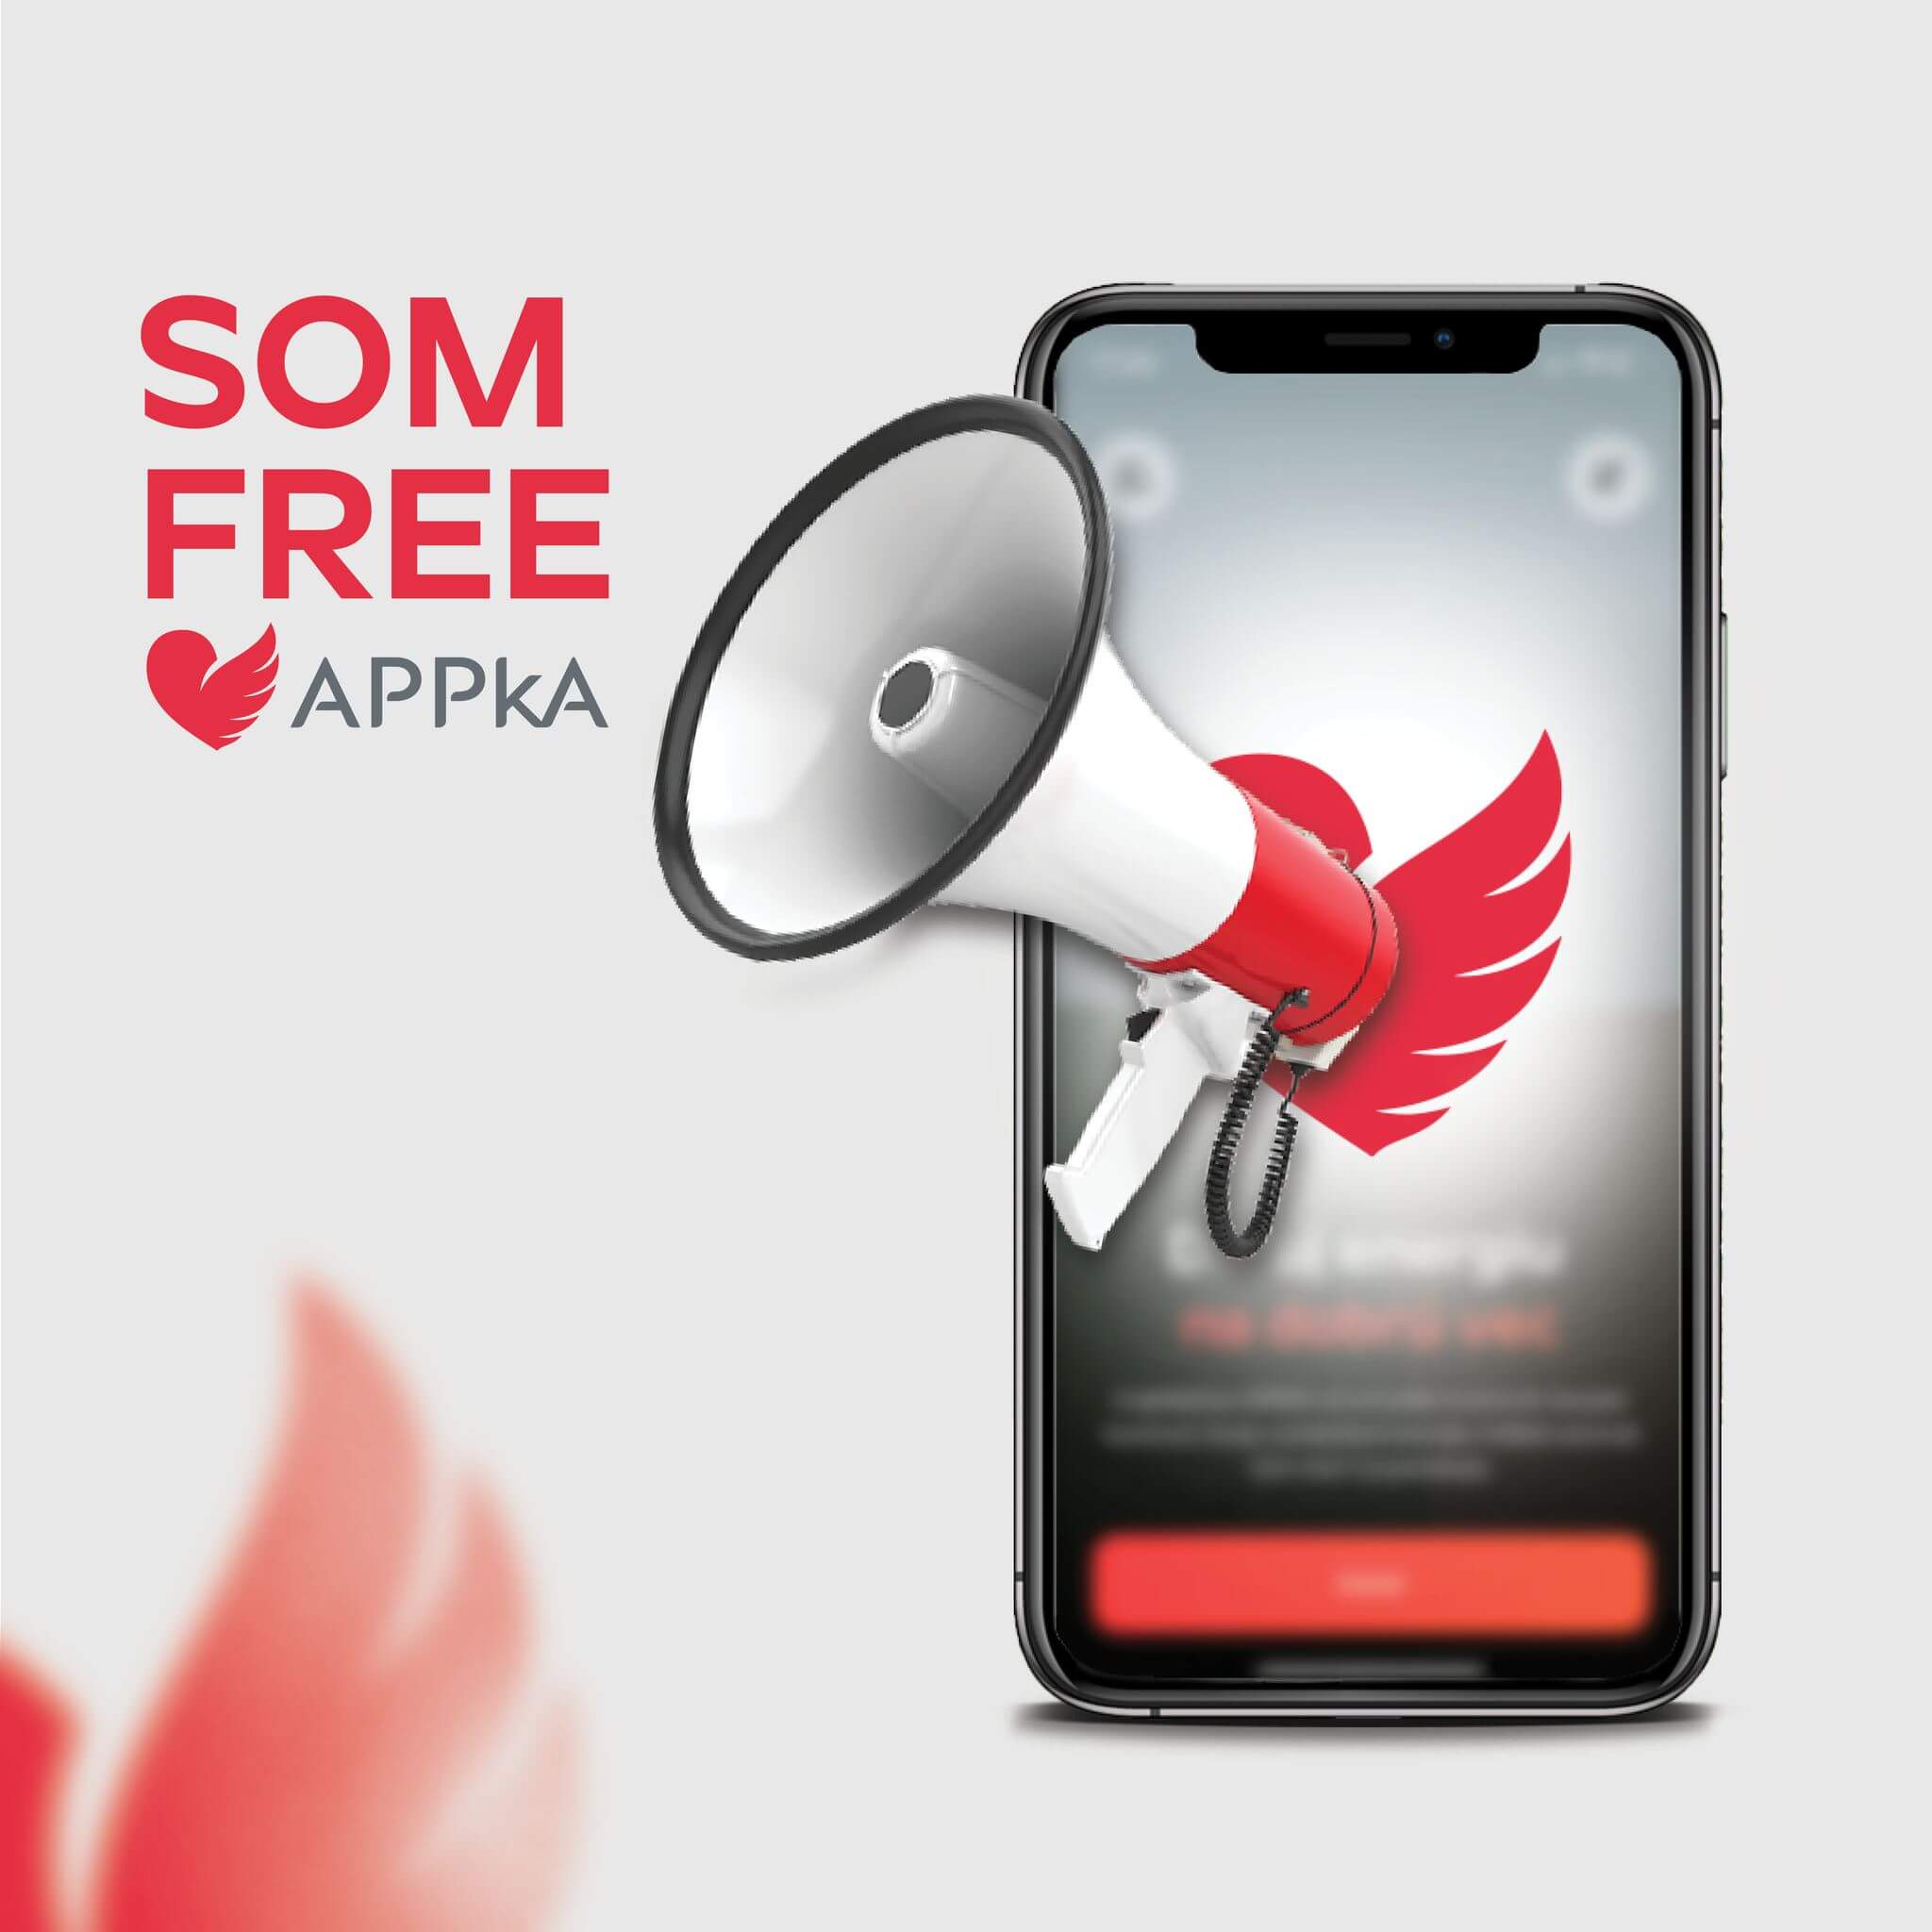 APPka - Som free appka